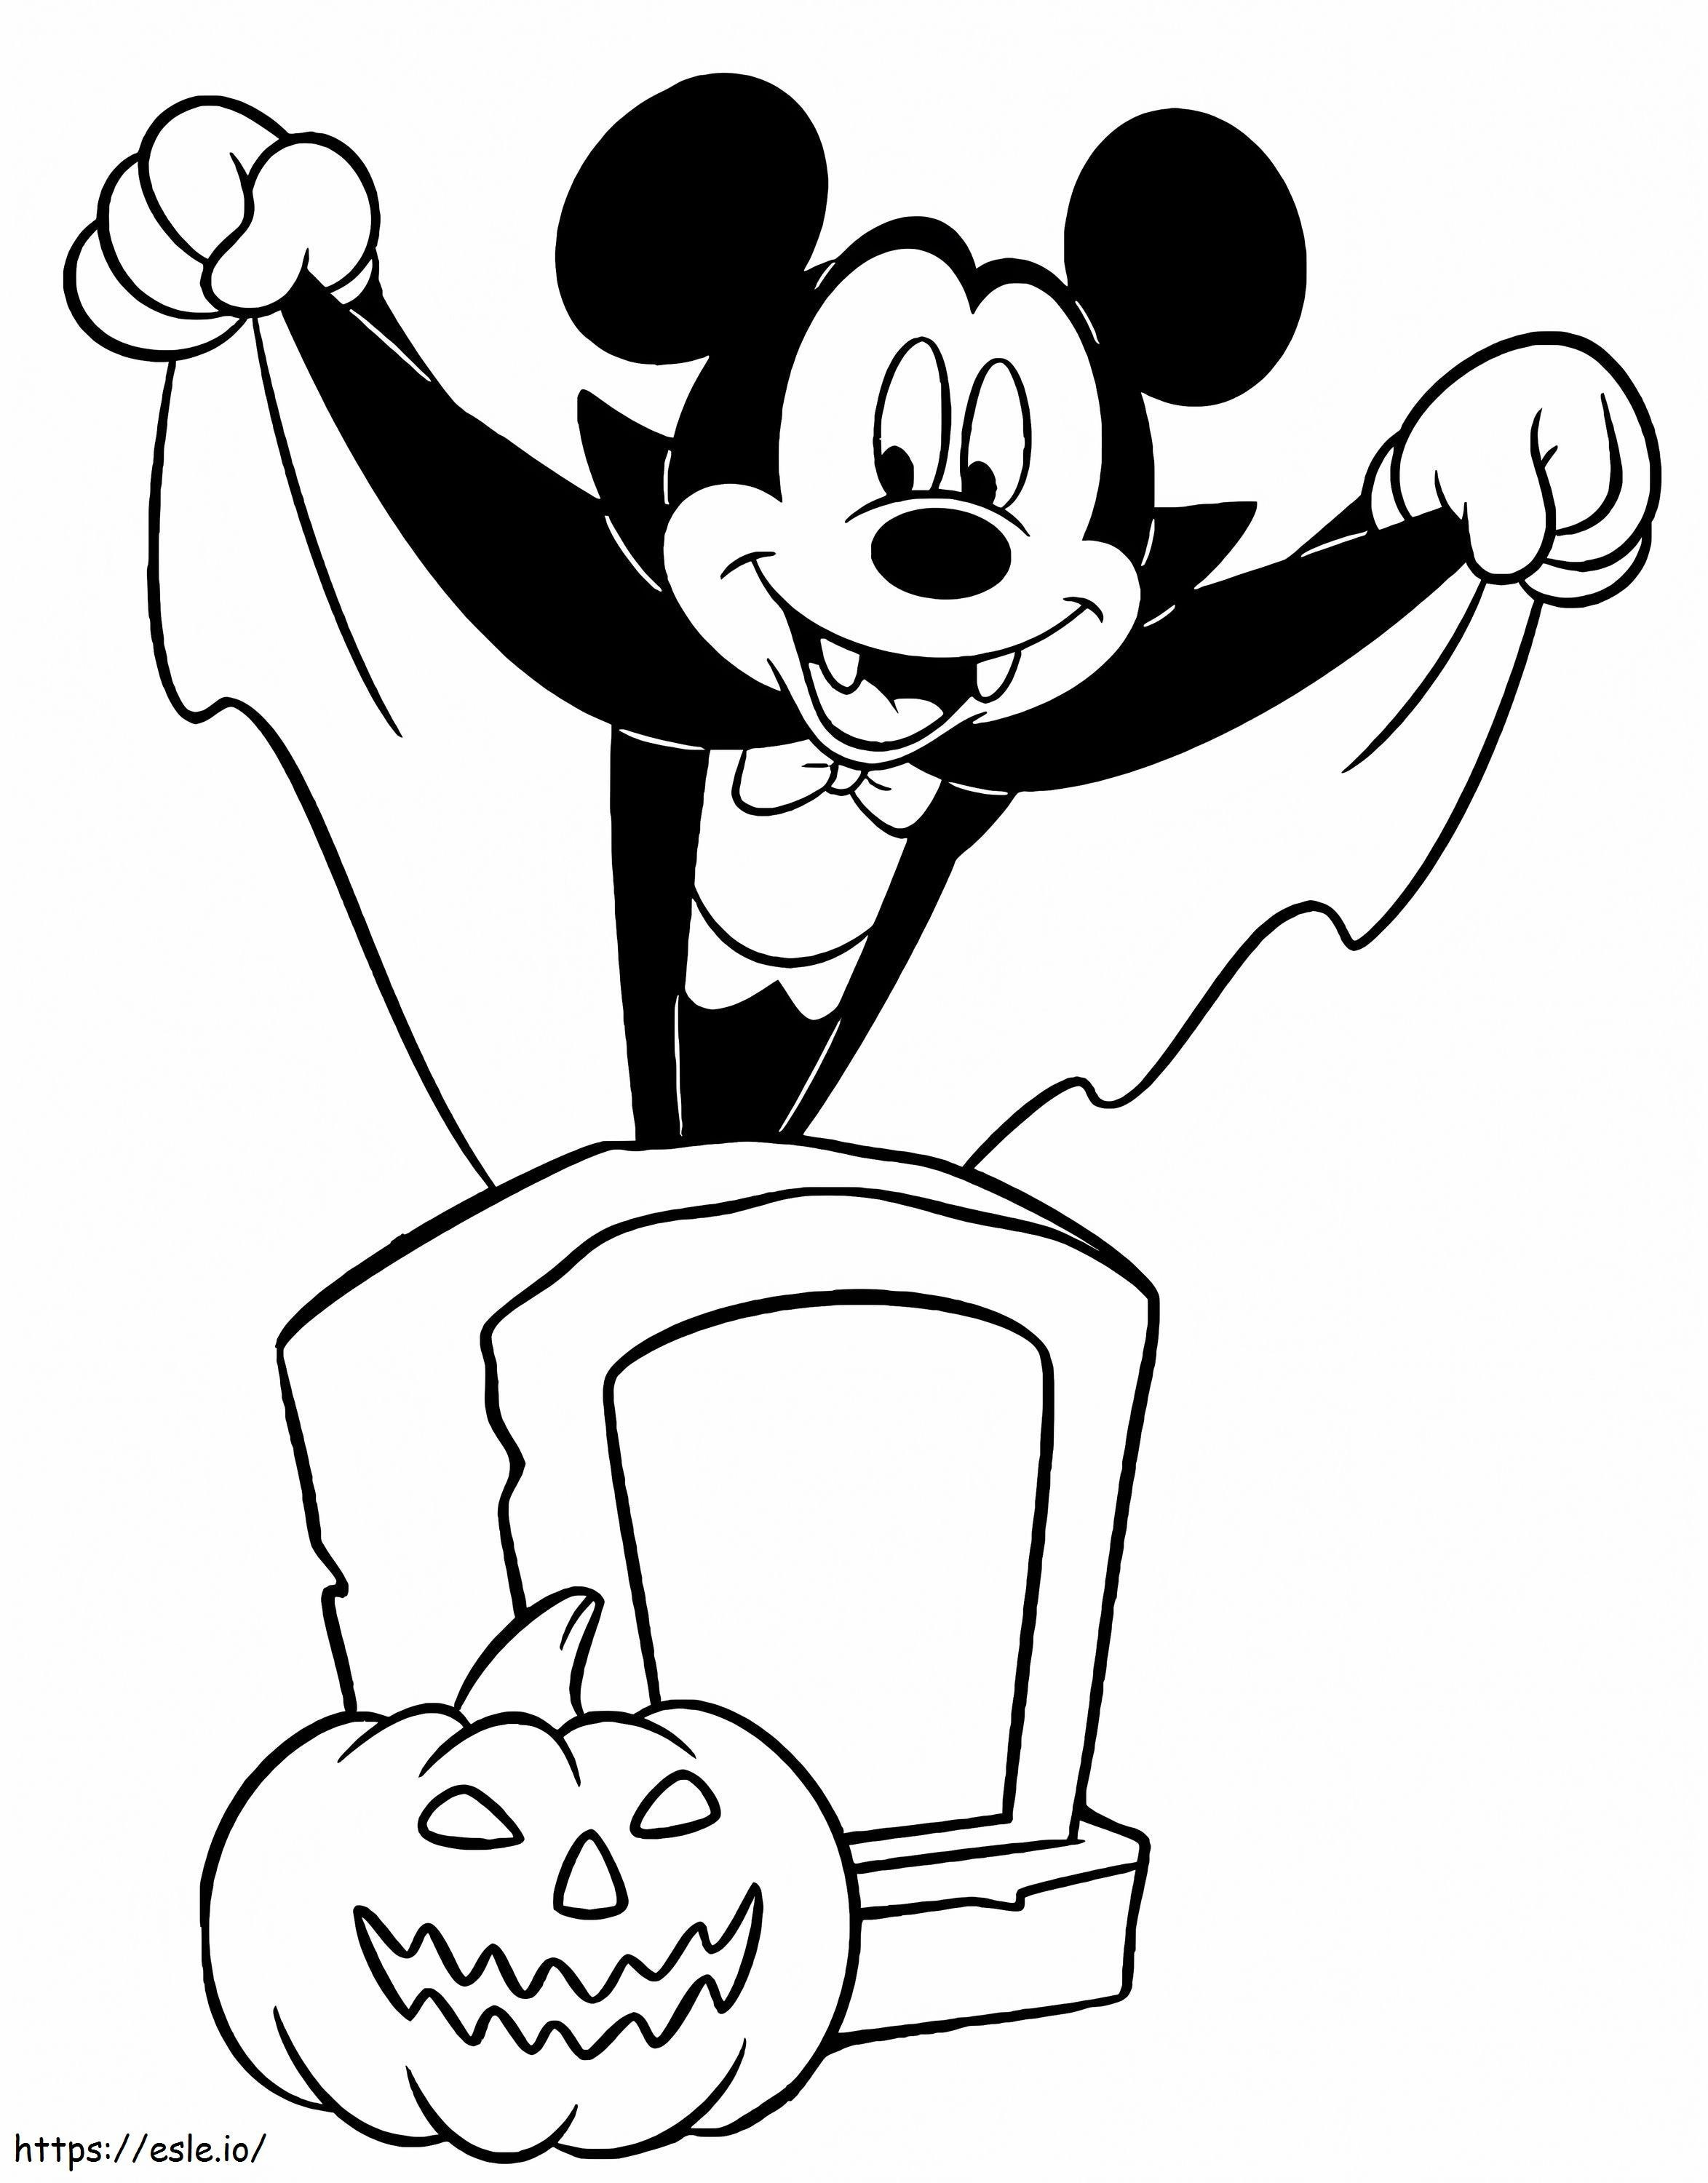 Mickey Dracula coloring page